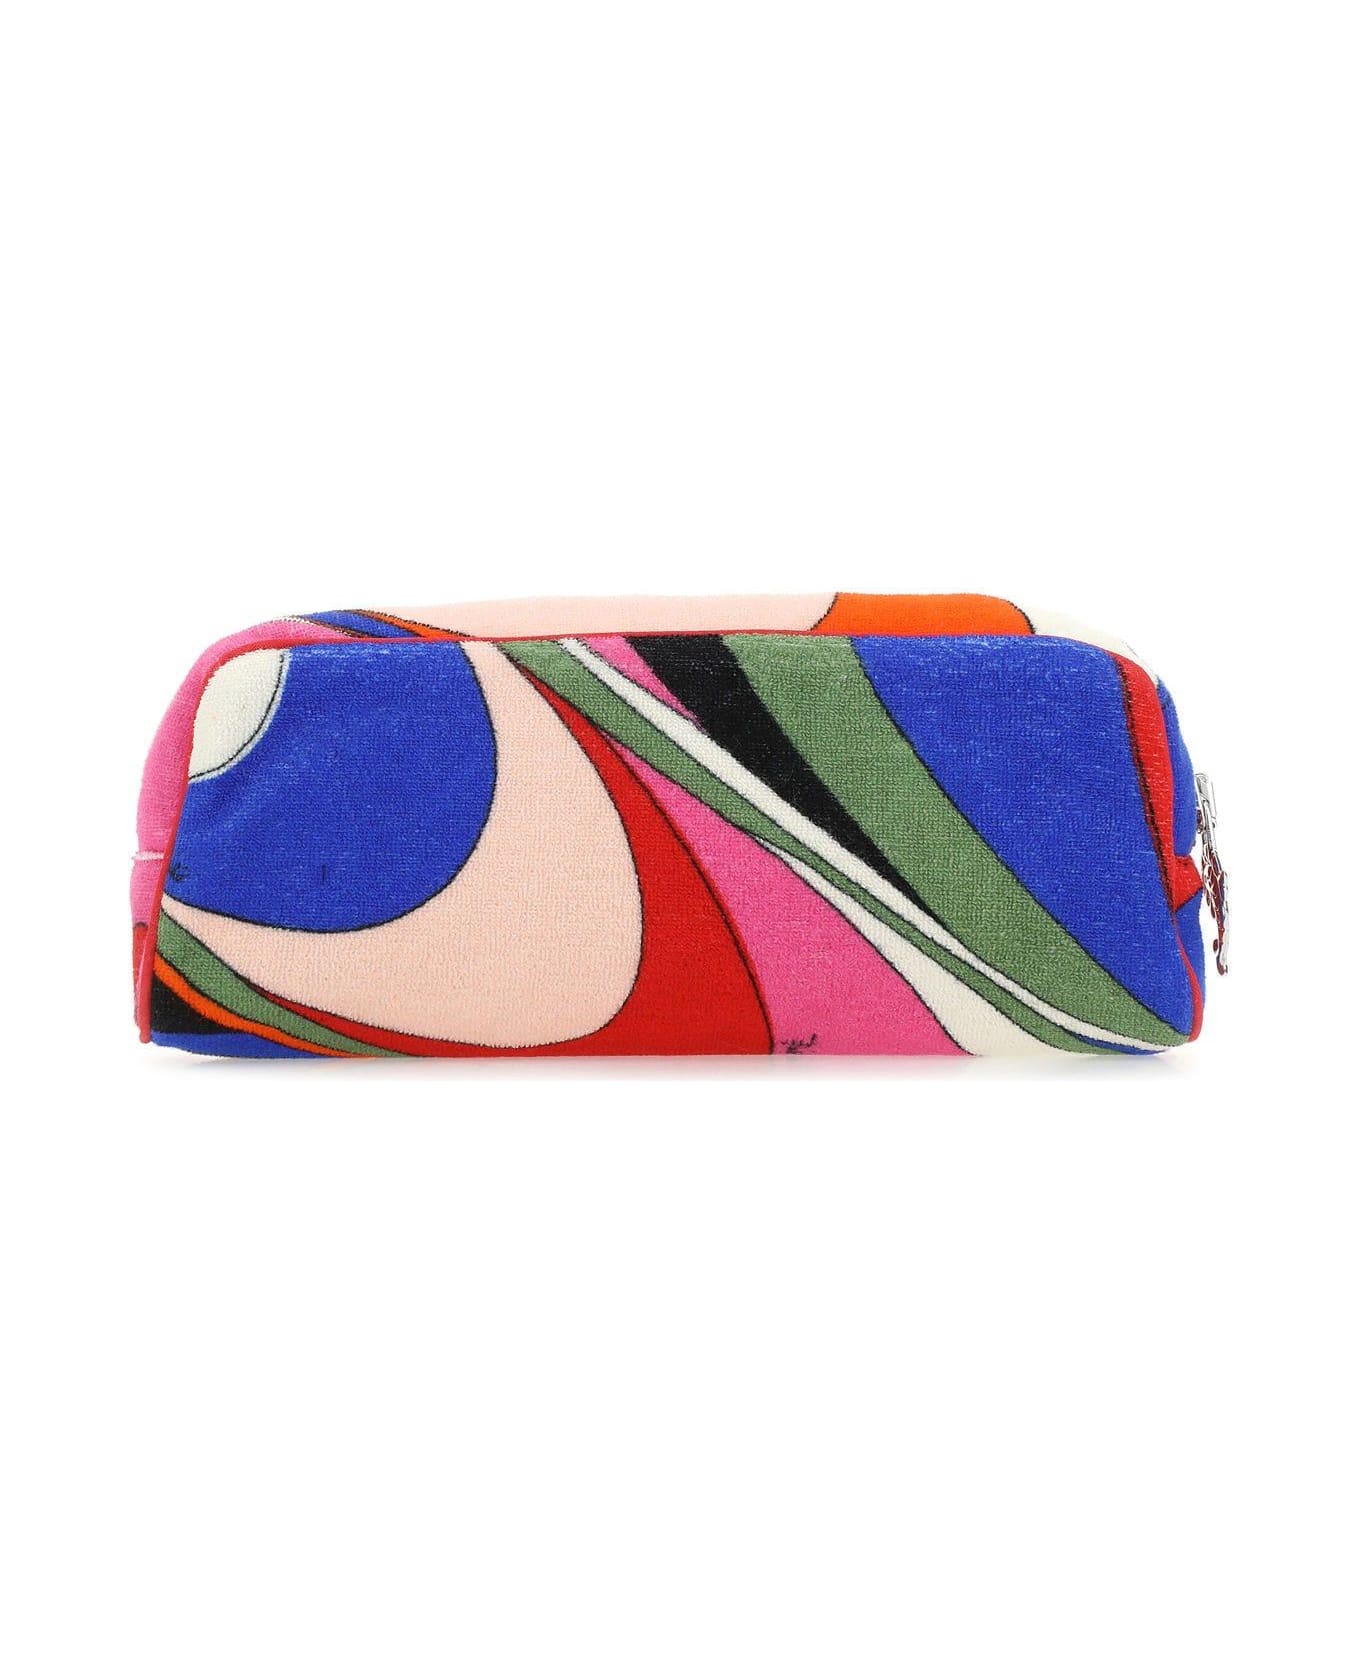 Pucci Multicolor Fabric Beauty Case - Multicolor クラッチバッグ